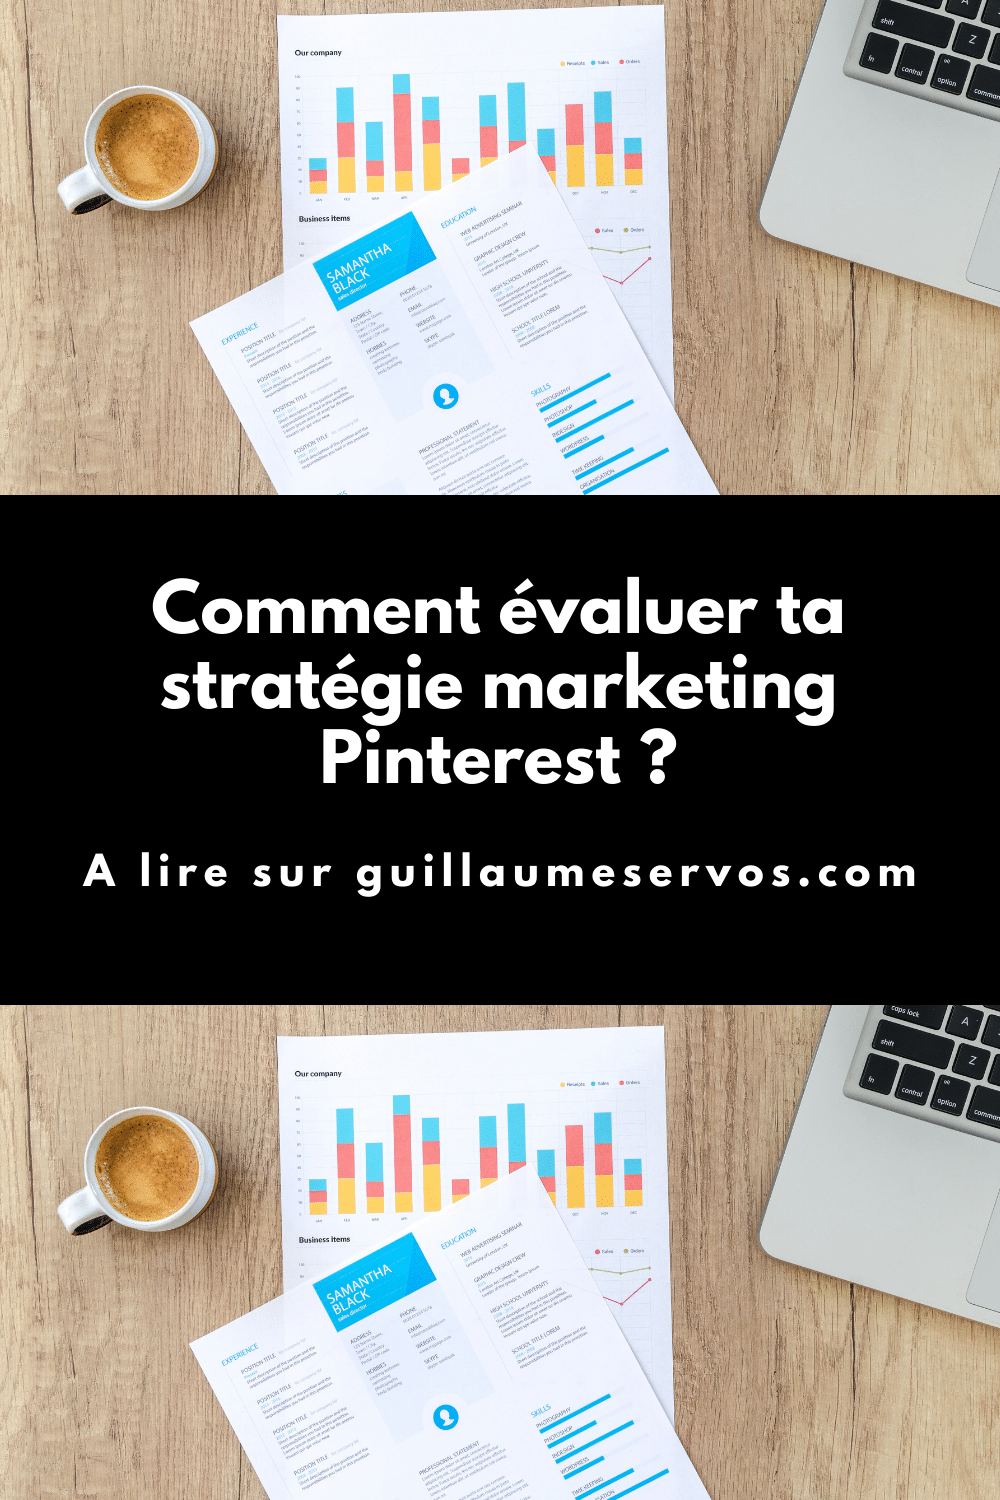 Quelles sont les questions à se poser pour évaluer son marketing Pinterest ? La plateforme, sert-elle ton business comme tu l'avais espéré ?